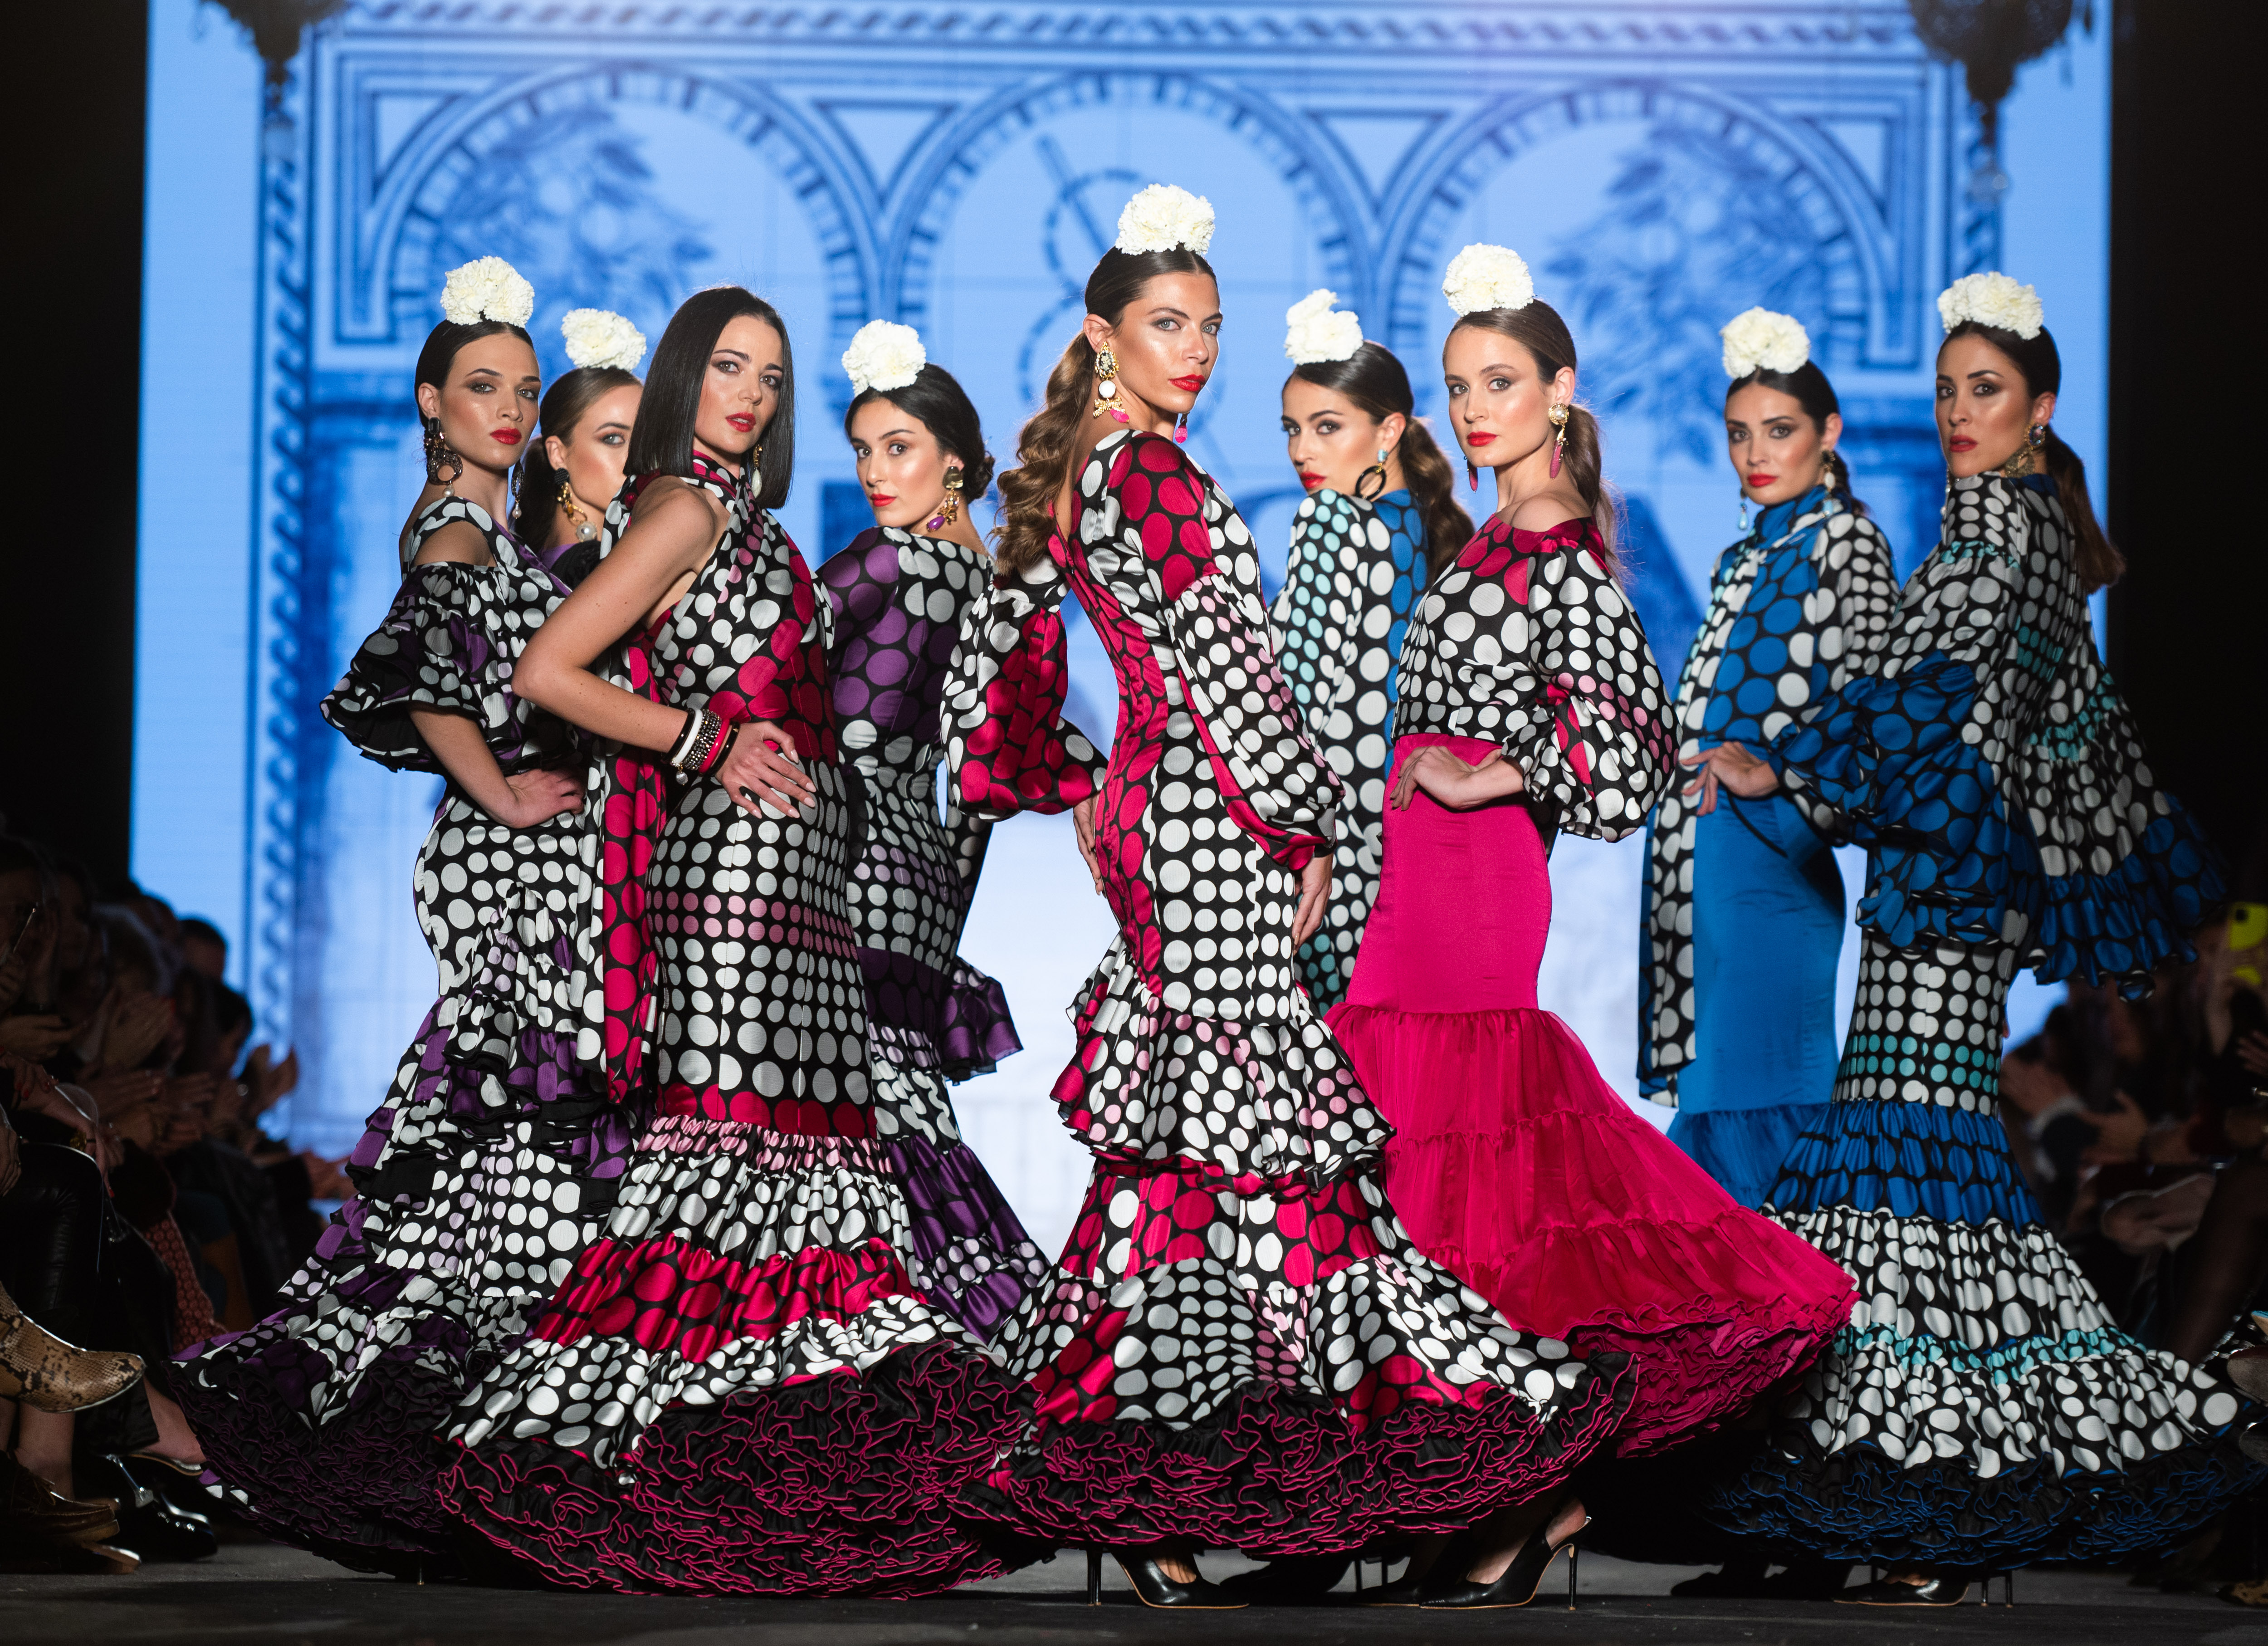 Las ganas de feria se imponen en las dos pasarelas de moda flamenca de | Estilo | EL PAÍS